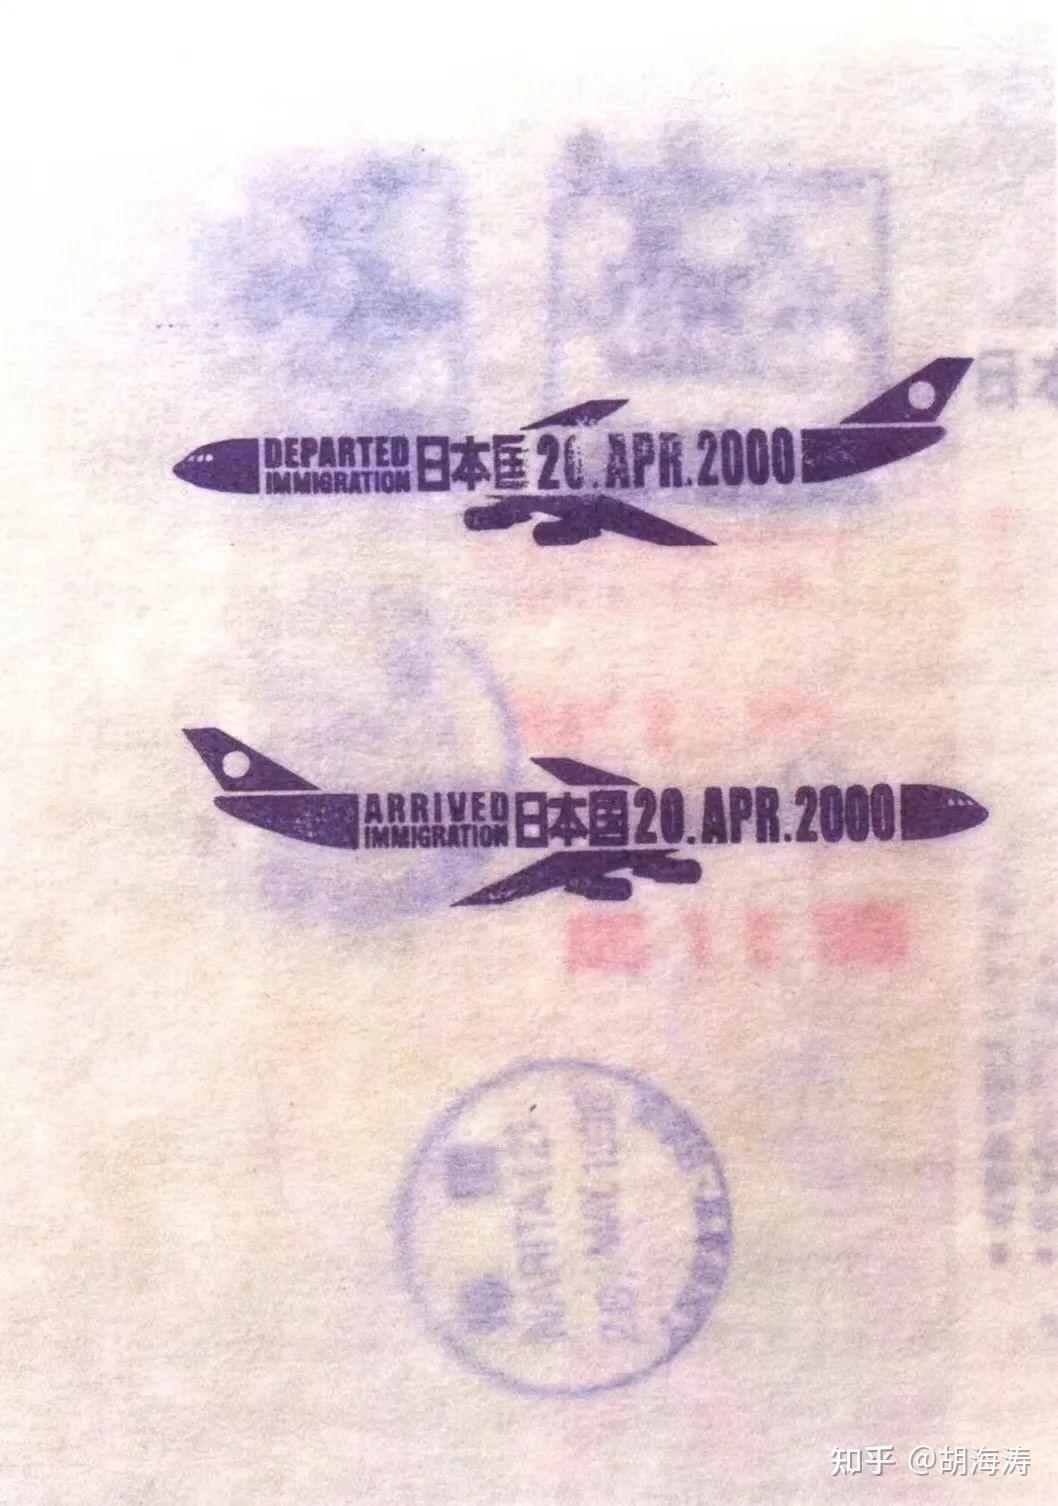 旅行日記: [蒐集]各國簽證和出入境章(2015/04/07更新)